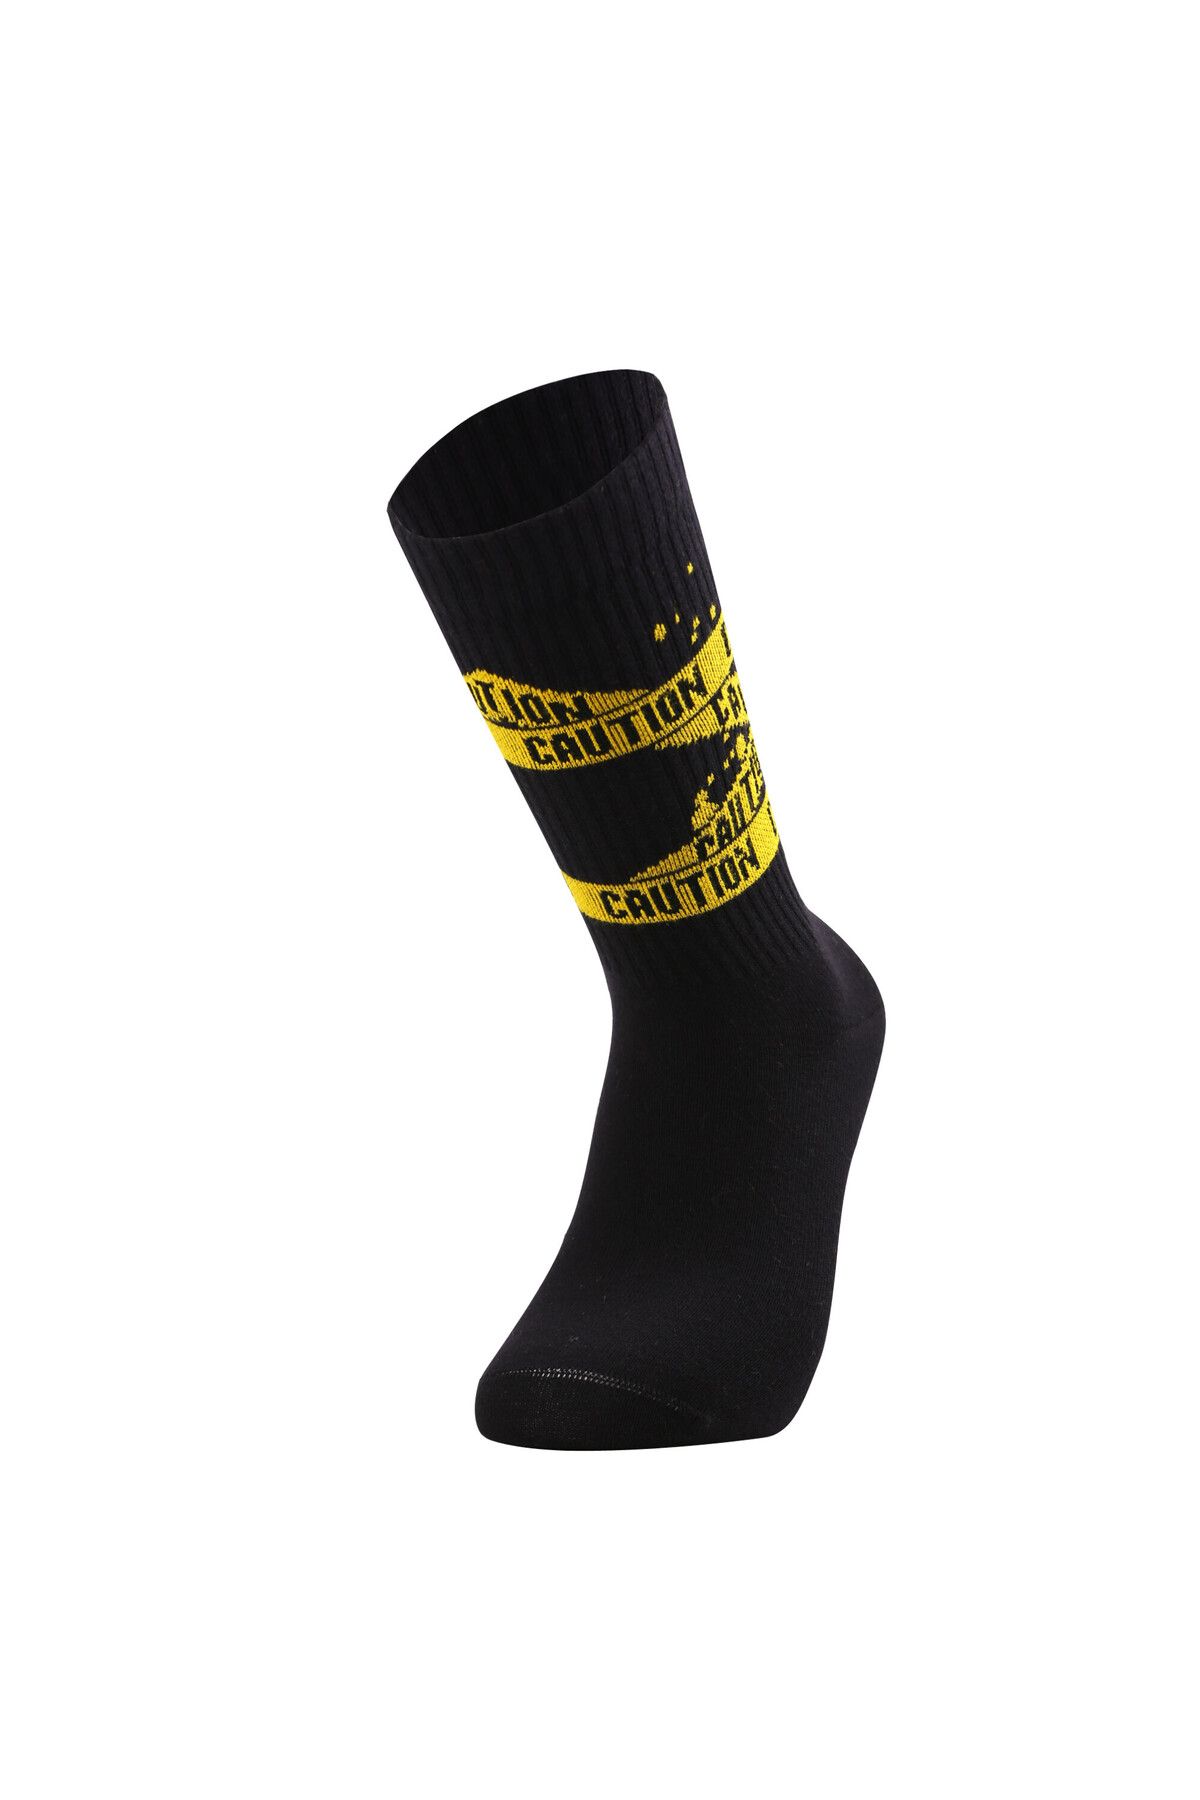 Colorcool Fitilli Spor Caution Yazılı Erkek Siyah Spor Çorap